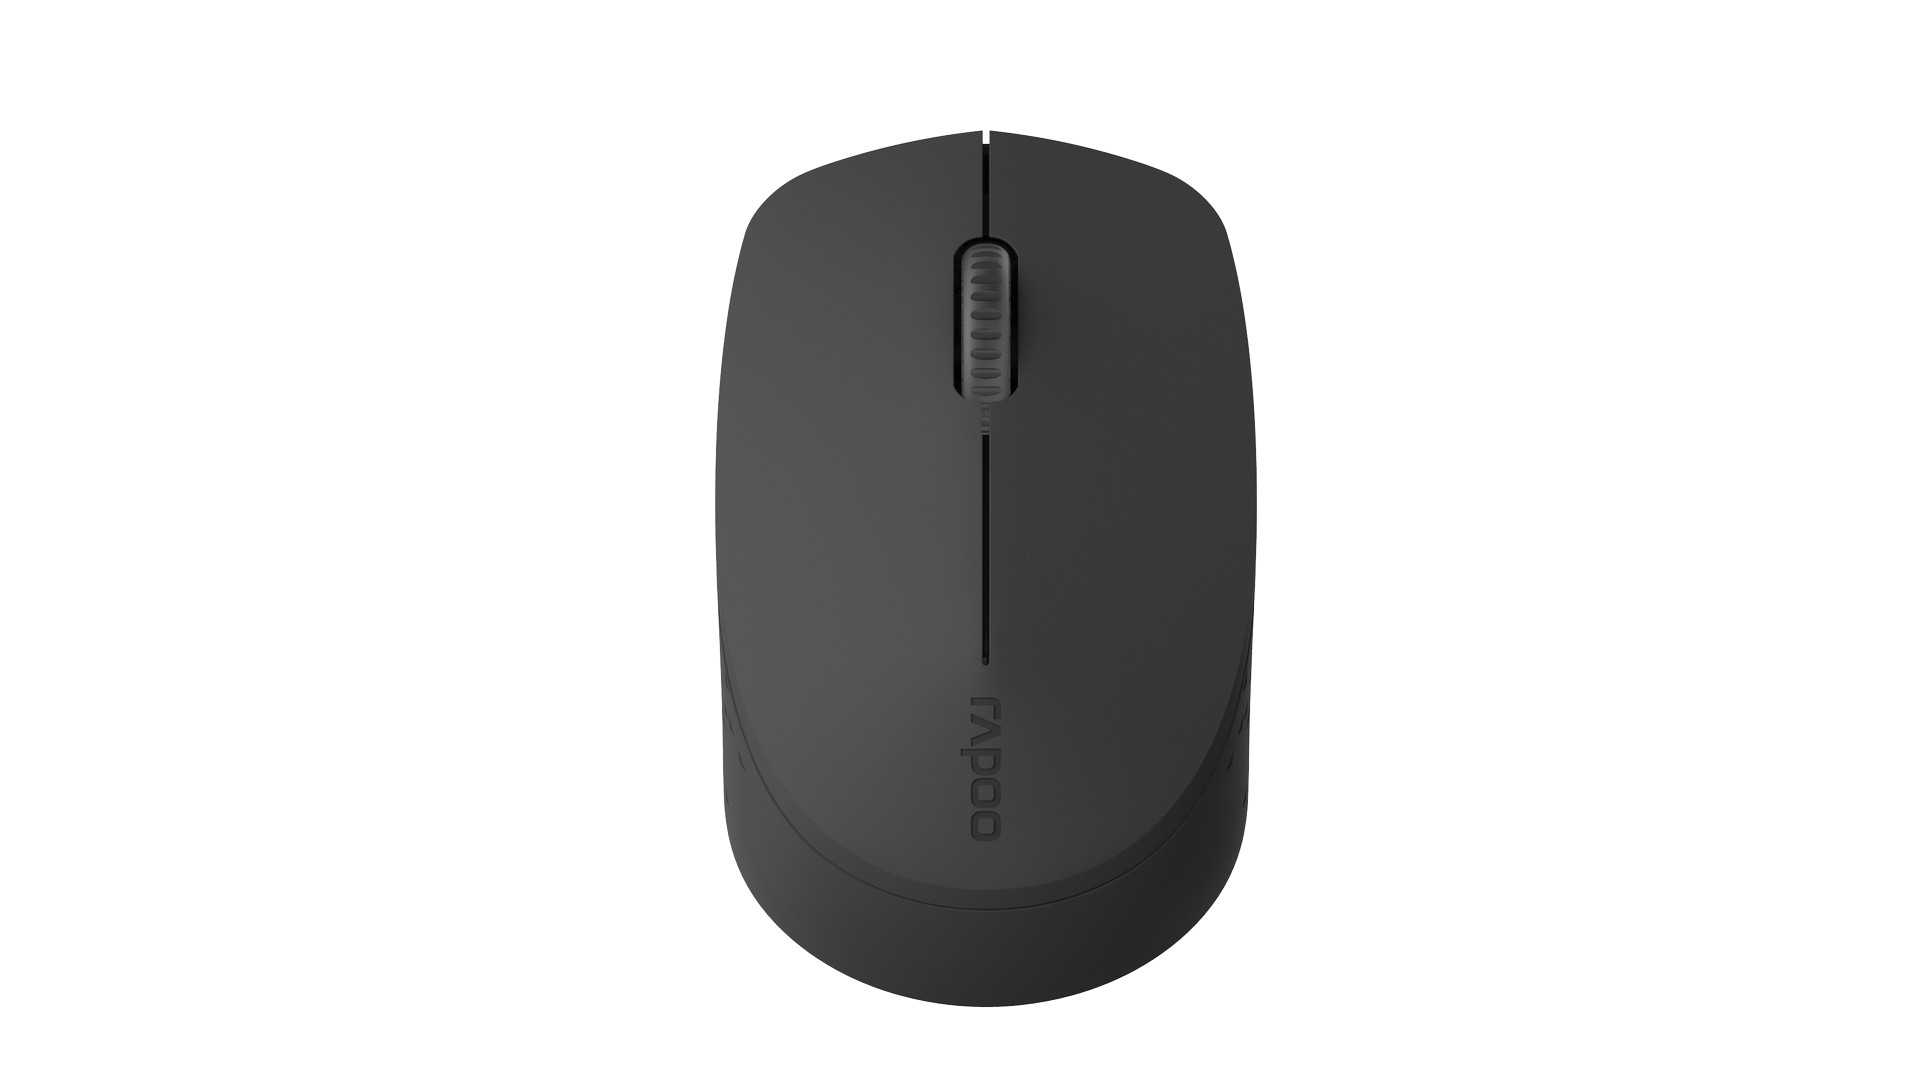 Rapoo dual-mode optical mouse 6610 grey bluetooth купить по акционной цене , отзывы и обзоры.